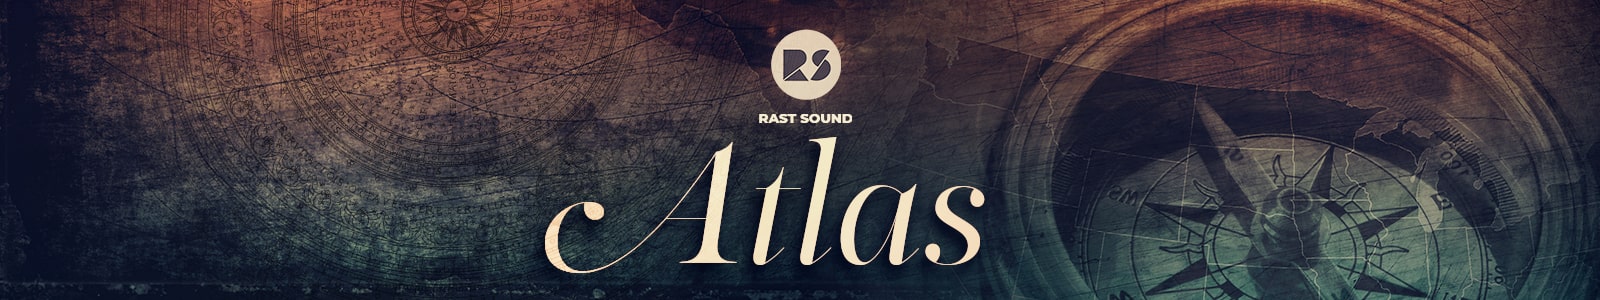 atlas by rast sound